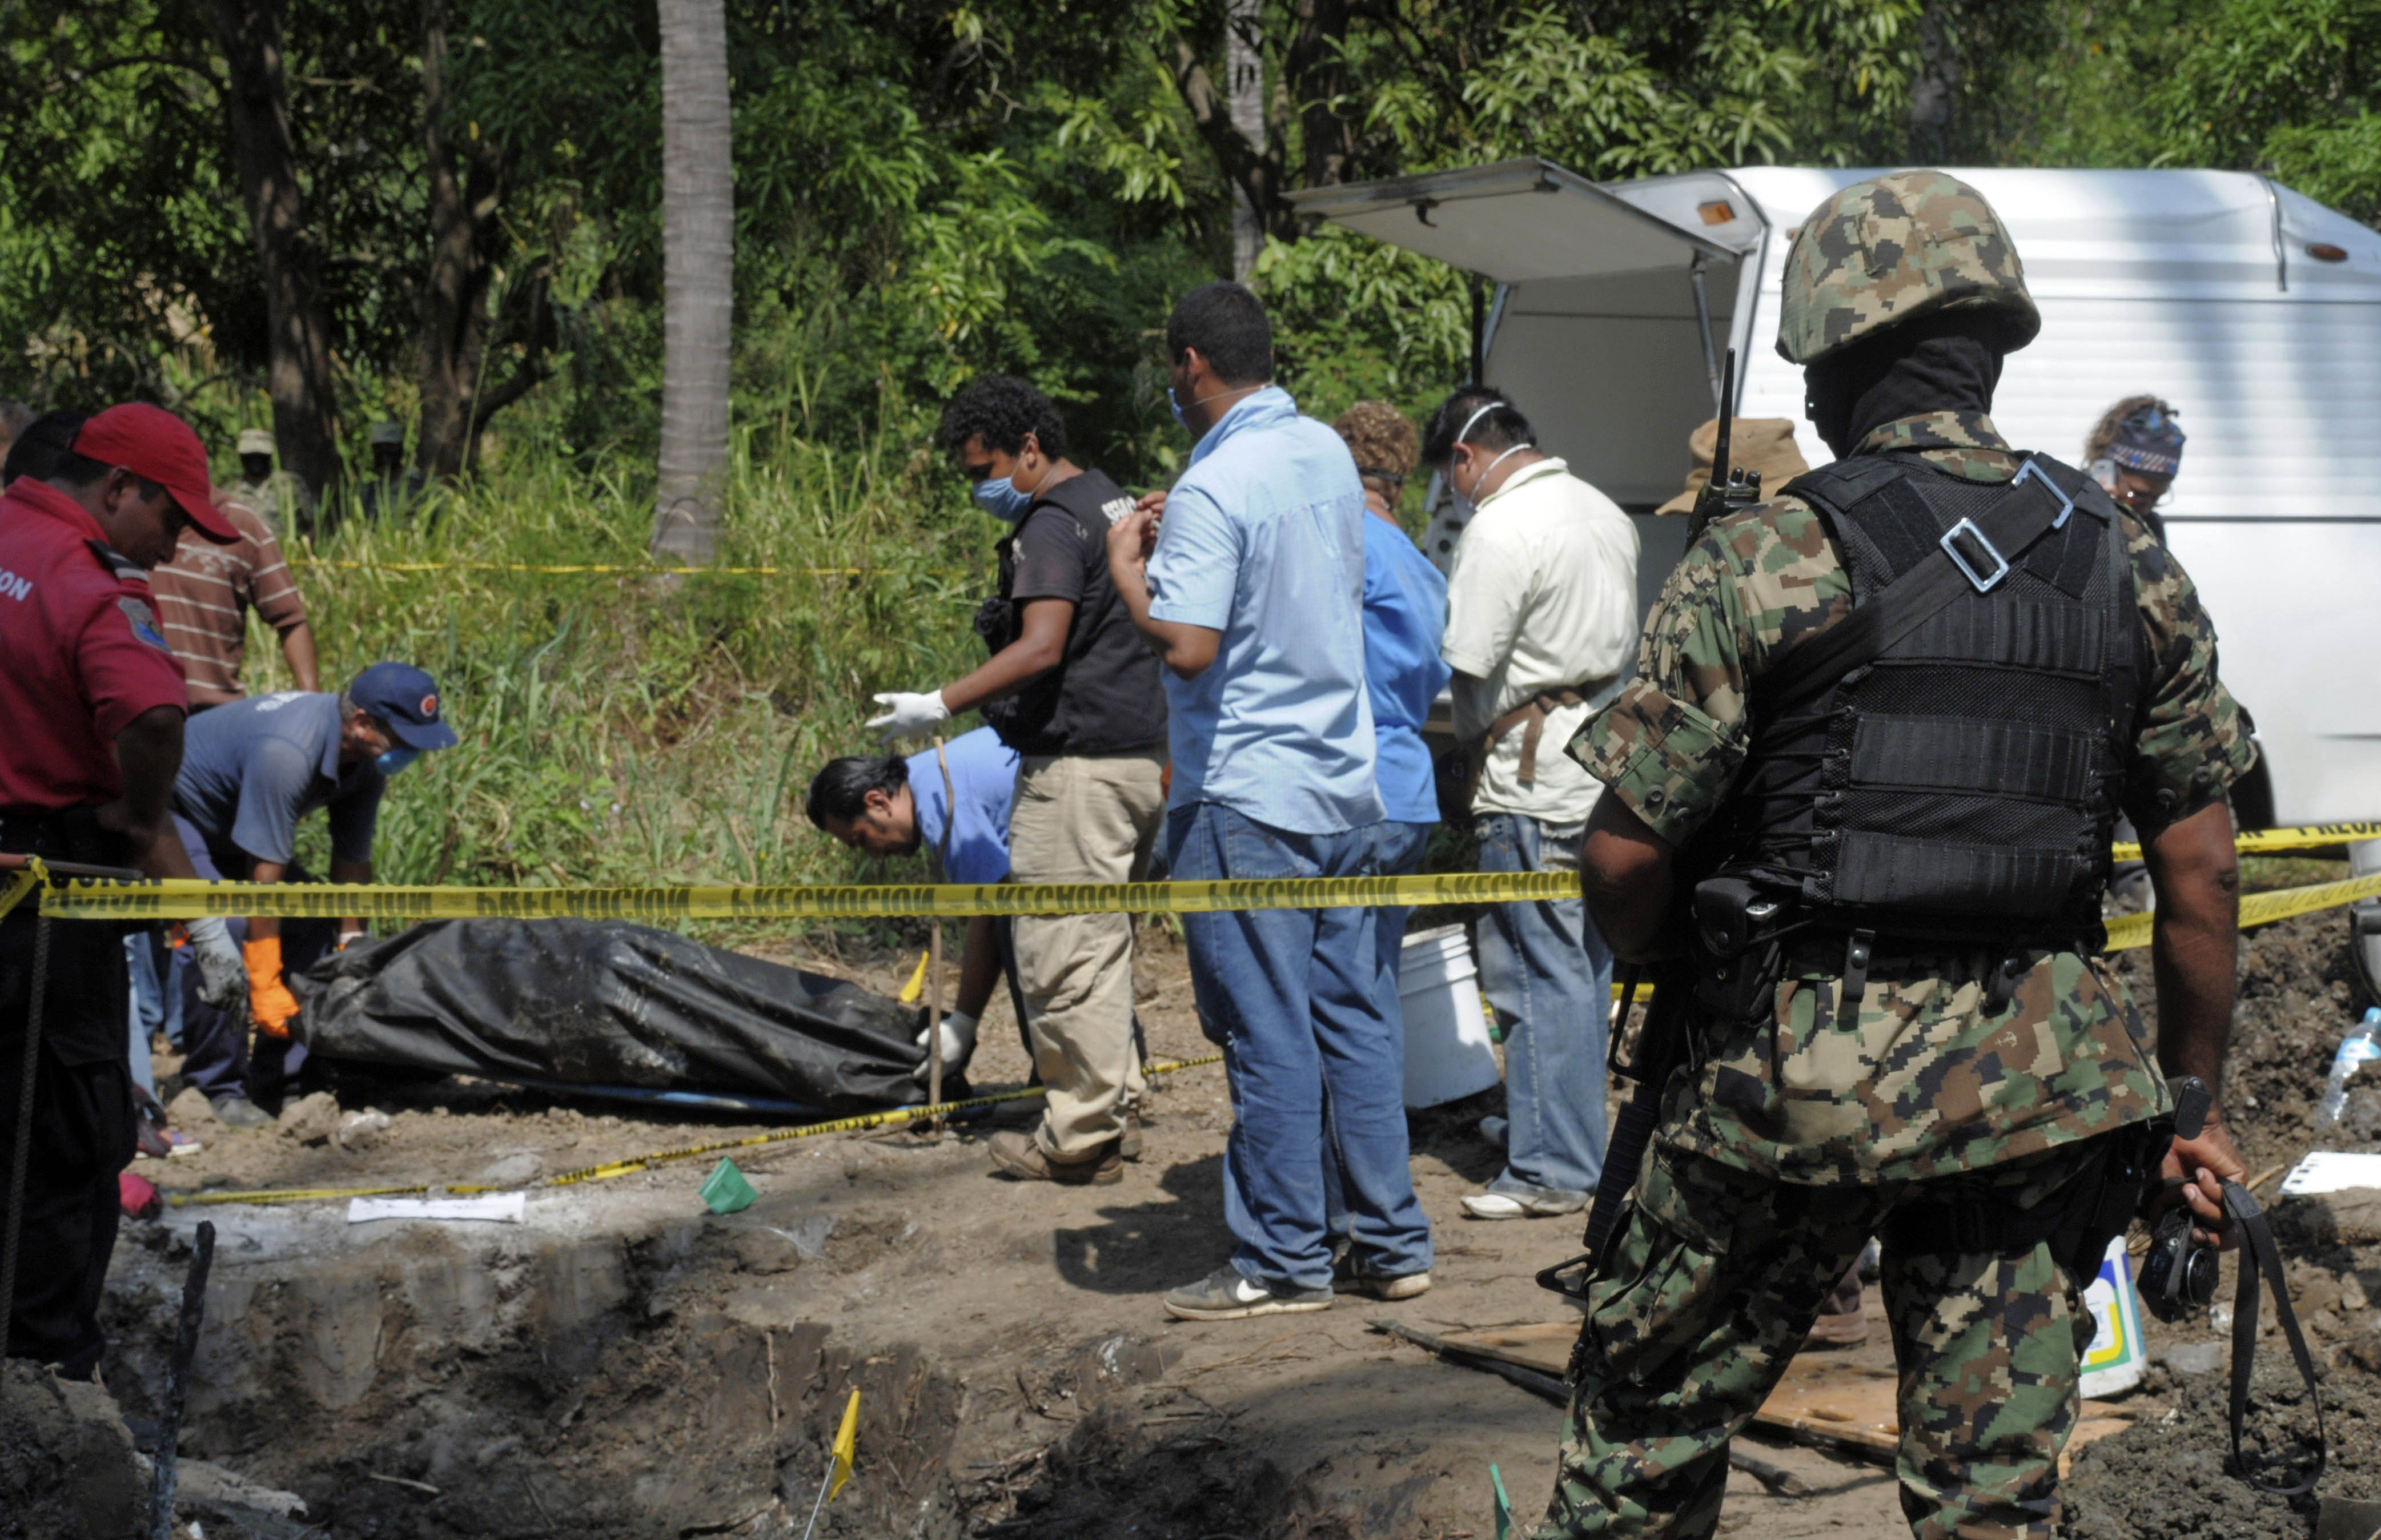 Droger, Massgrav, Krig, Brott och straff, Mexiko, mord